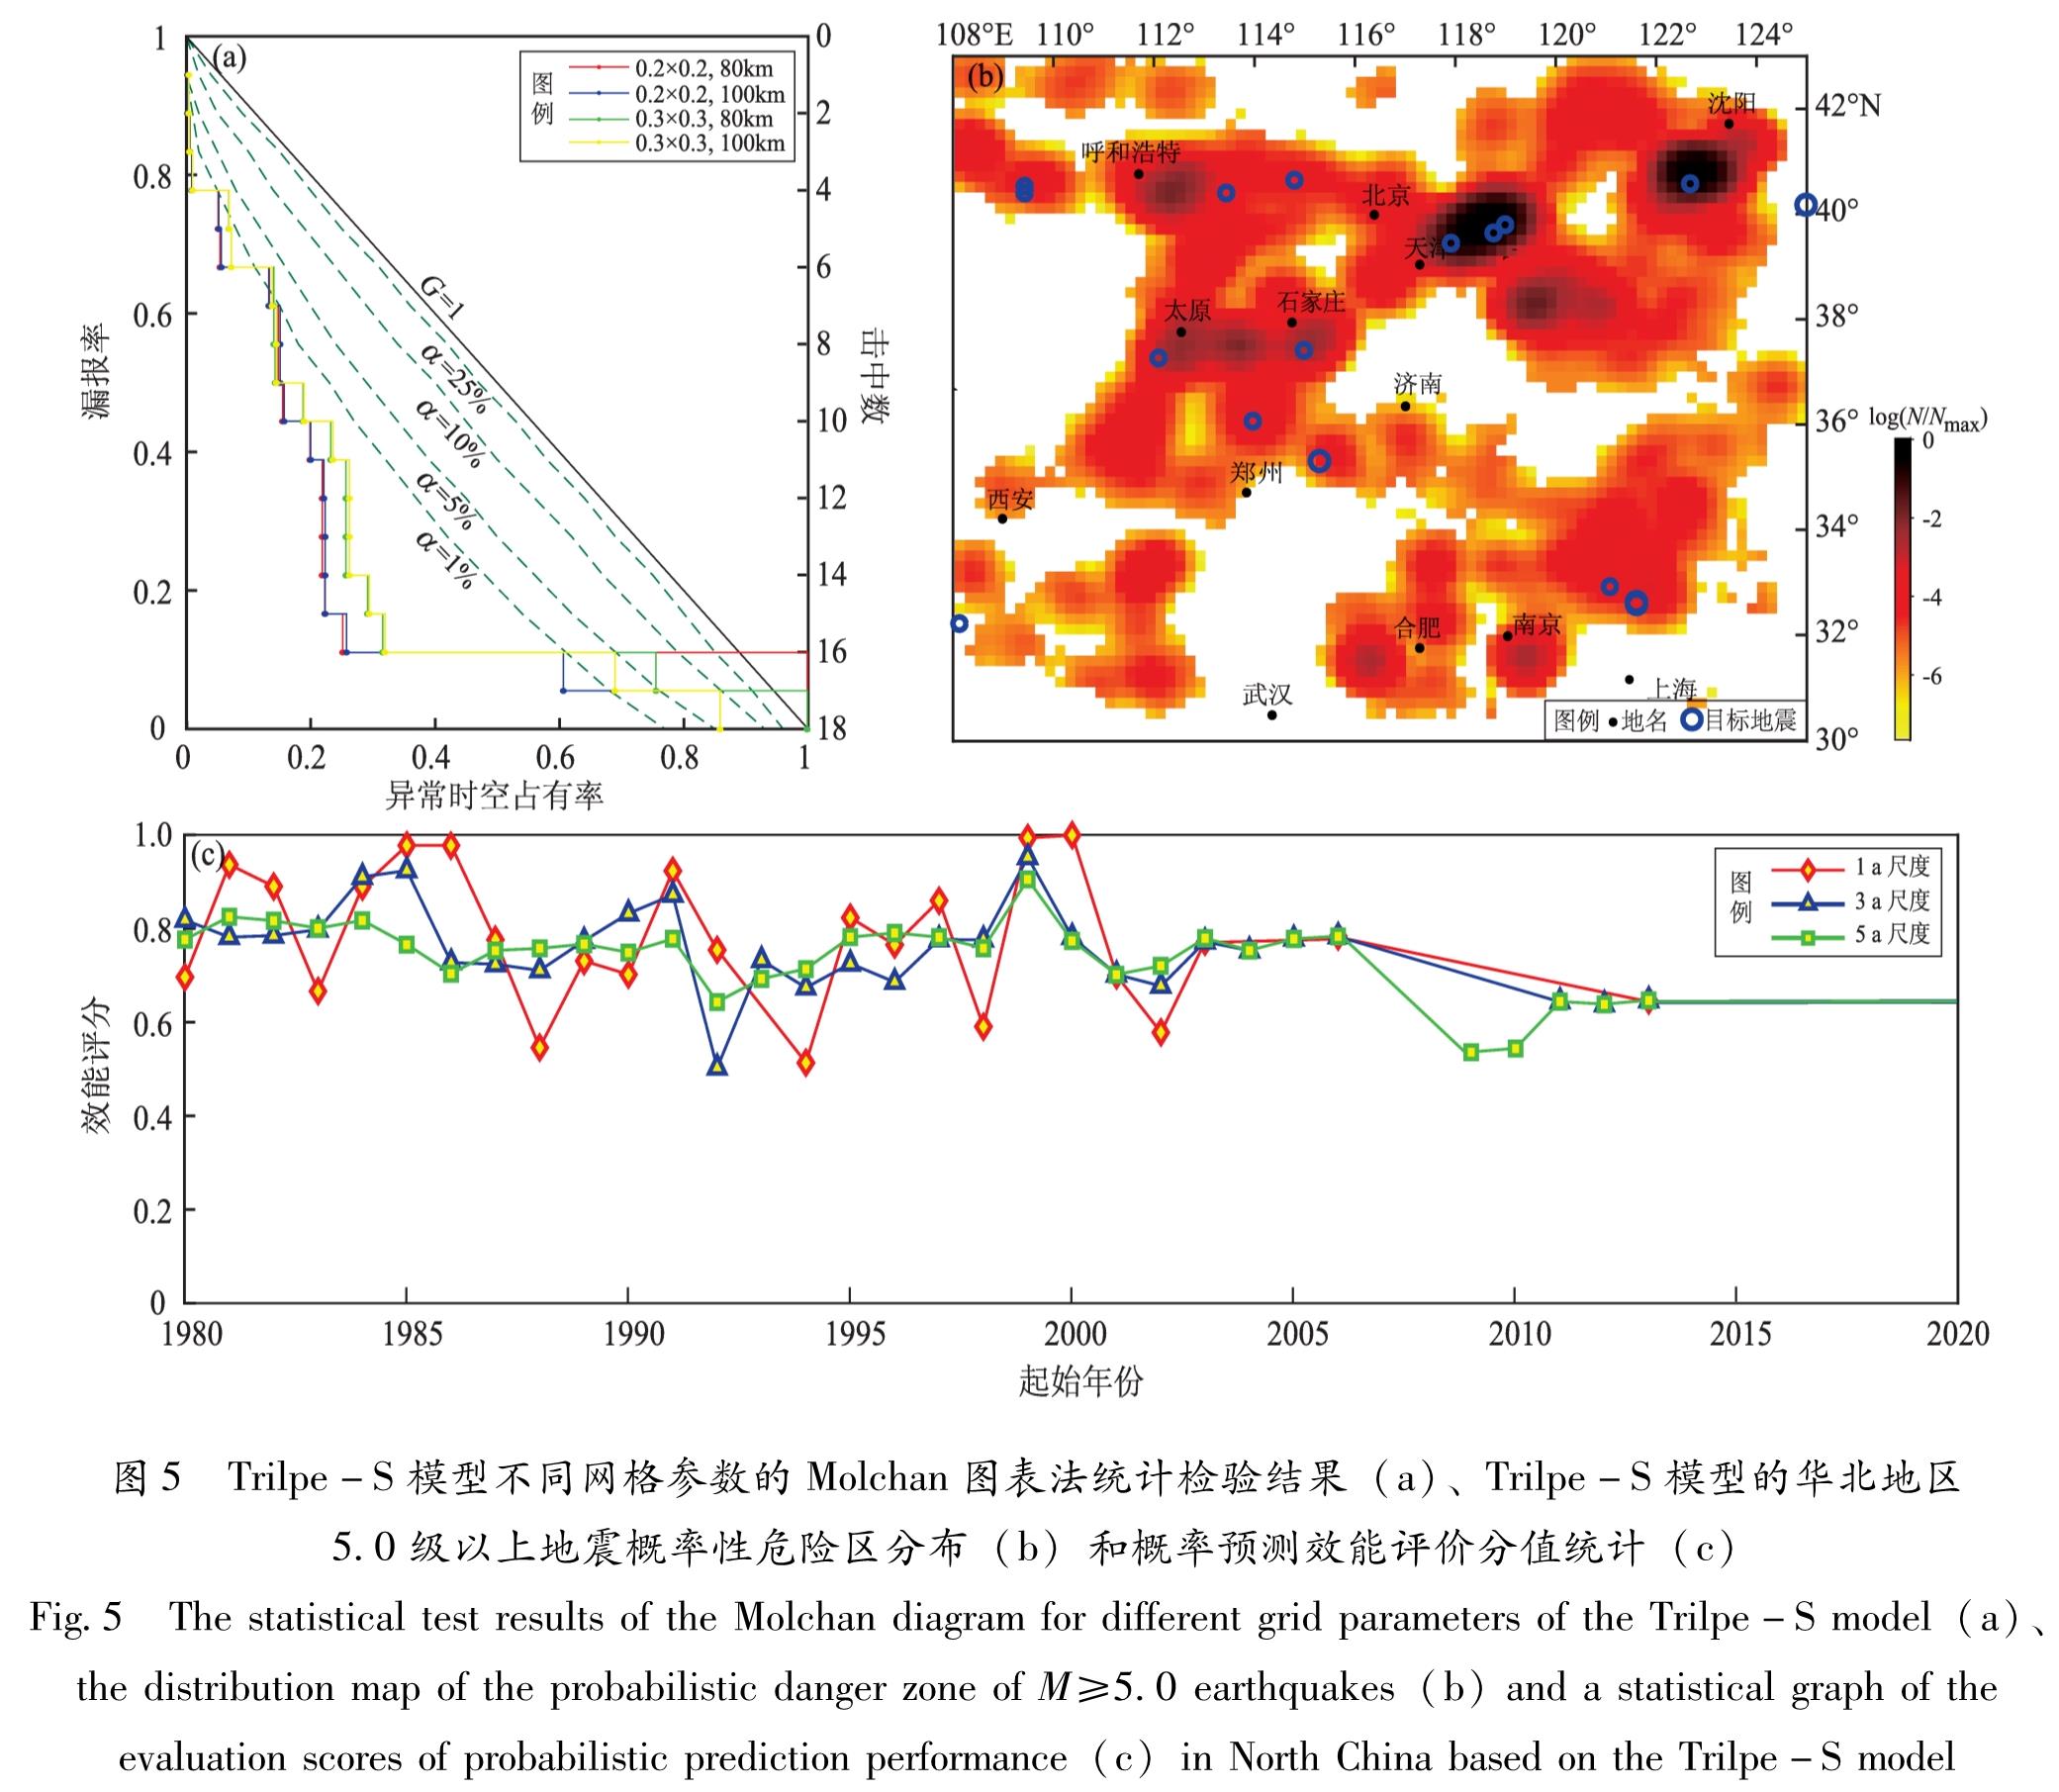 图5 Trilpe-S模型不同网格参数的Molchan图表法统计检验结果(a)、Trilpe-S模型的华北地区5.0级以上地震概率性危险区分布(b)和概率预测效能评价分值统计(c)<br/>Fig.5 The statistical test results of the Molchan diagram for different grid parameters of the Trilpe-S model(a)、the distribution map of the probabilistic danger zone of M≥5.0 earthquakes(b)and a statistical graph of the evaluation scores of probabilistic prediction performance(c)in North China based on the Trilpe-S model